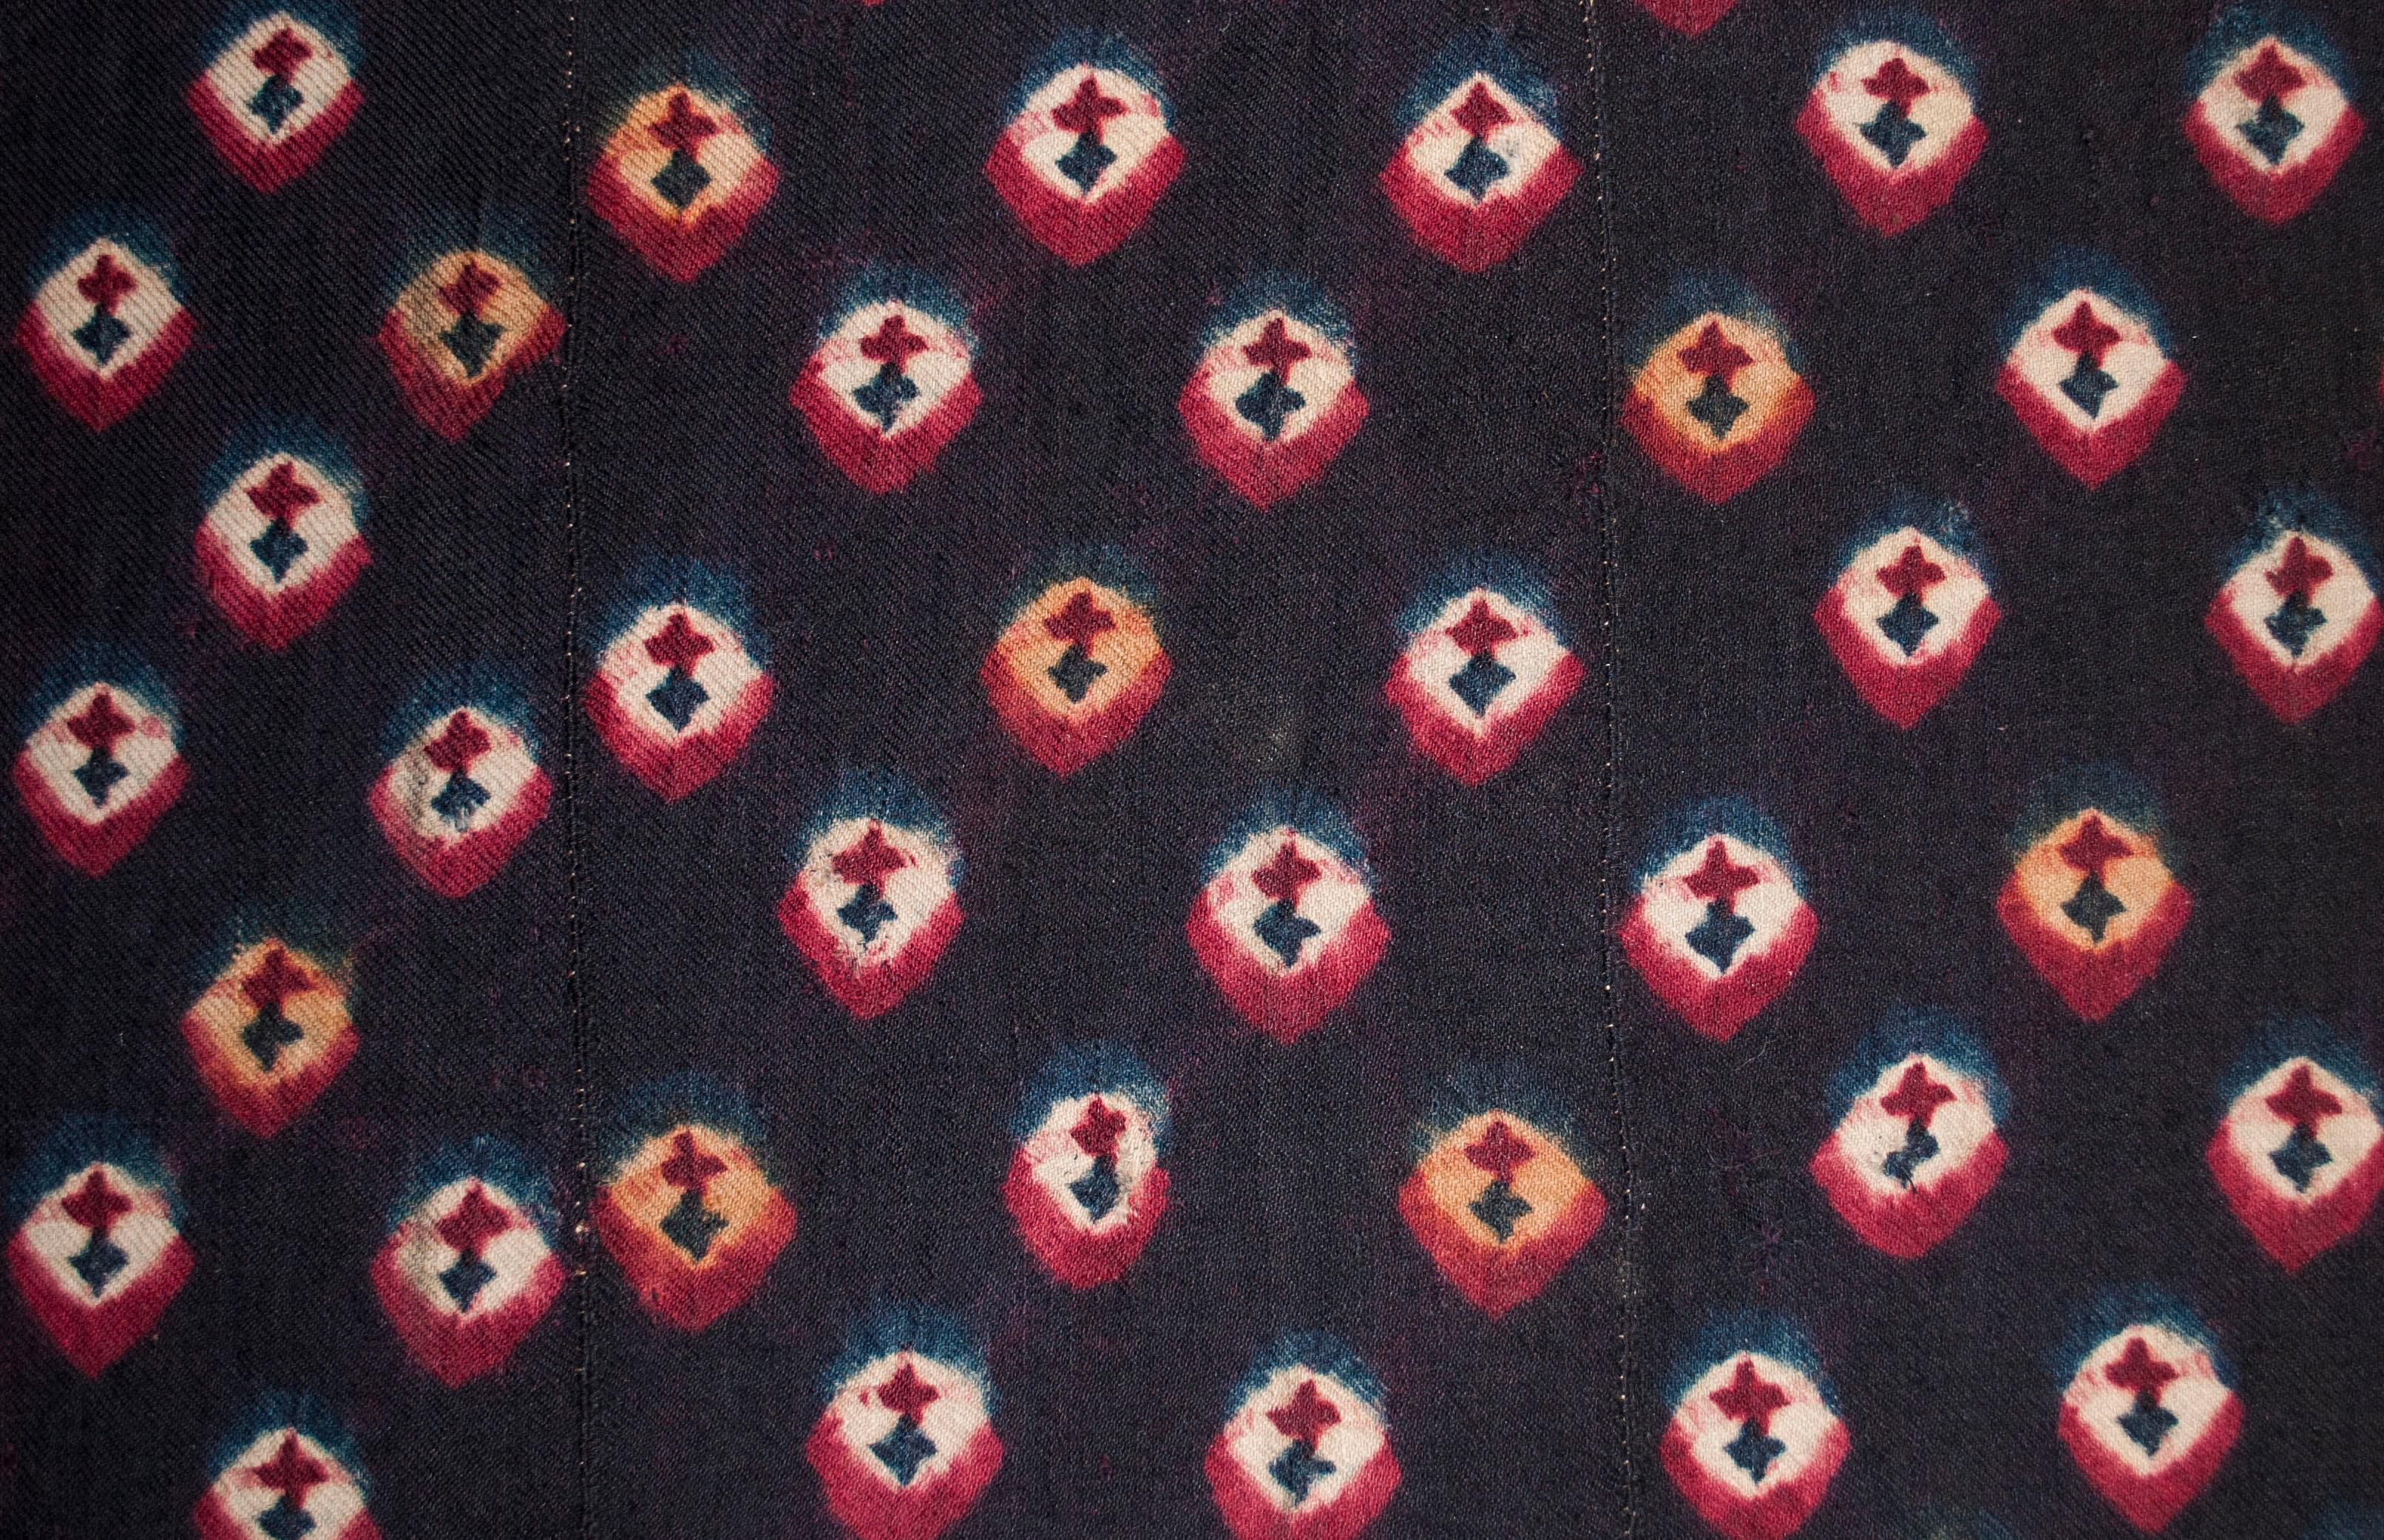 Panneau teinté dans la masse provenant du Tibet, vers 1900.

Tissé sur un métier à dos par les nomades tibétains, ce type de laine teintée dans la masse était traditionnellement utilisé pour les couvertures de chevaux, les tapis d'assise ou la